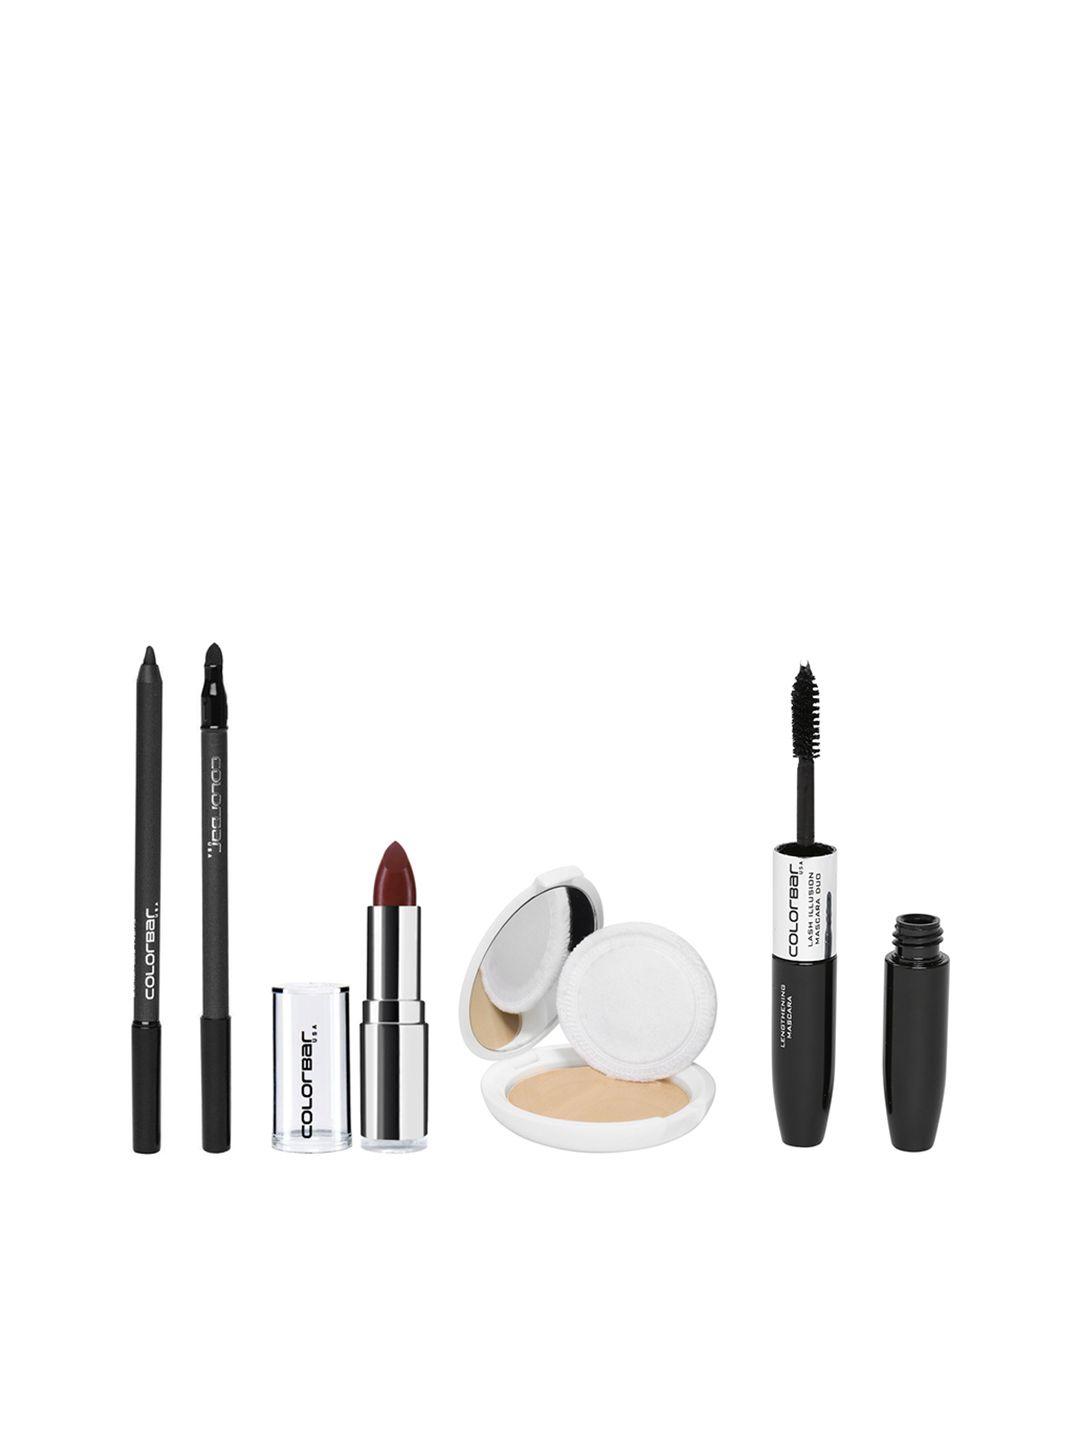 colorbar women makeup gift set